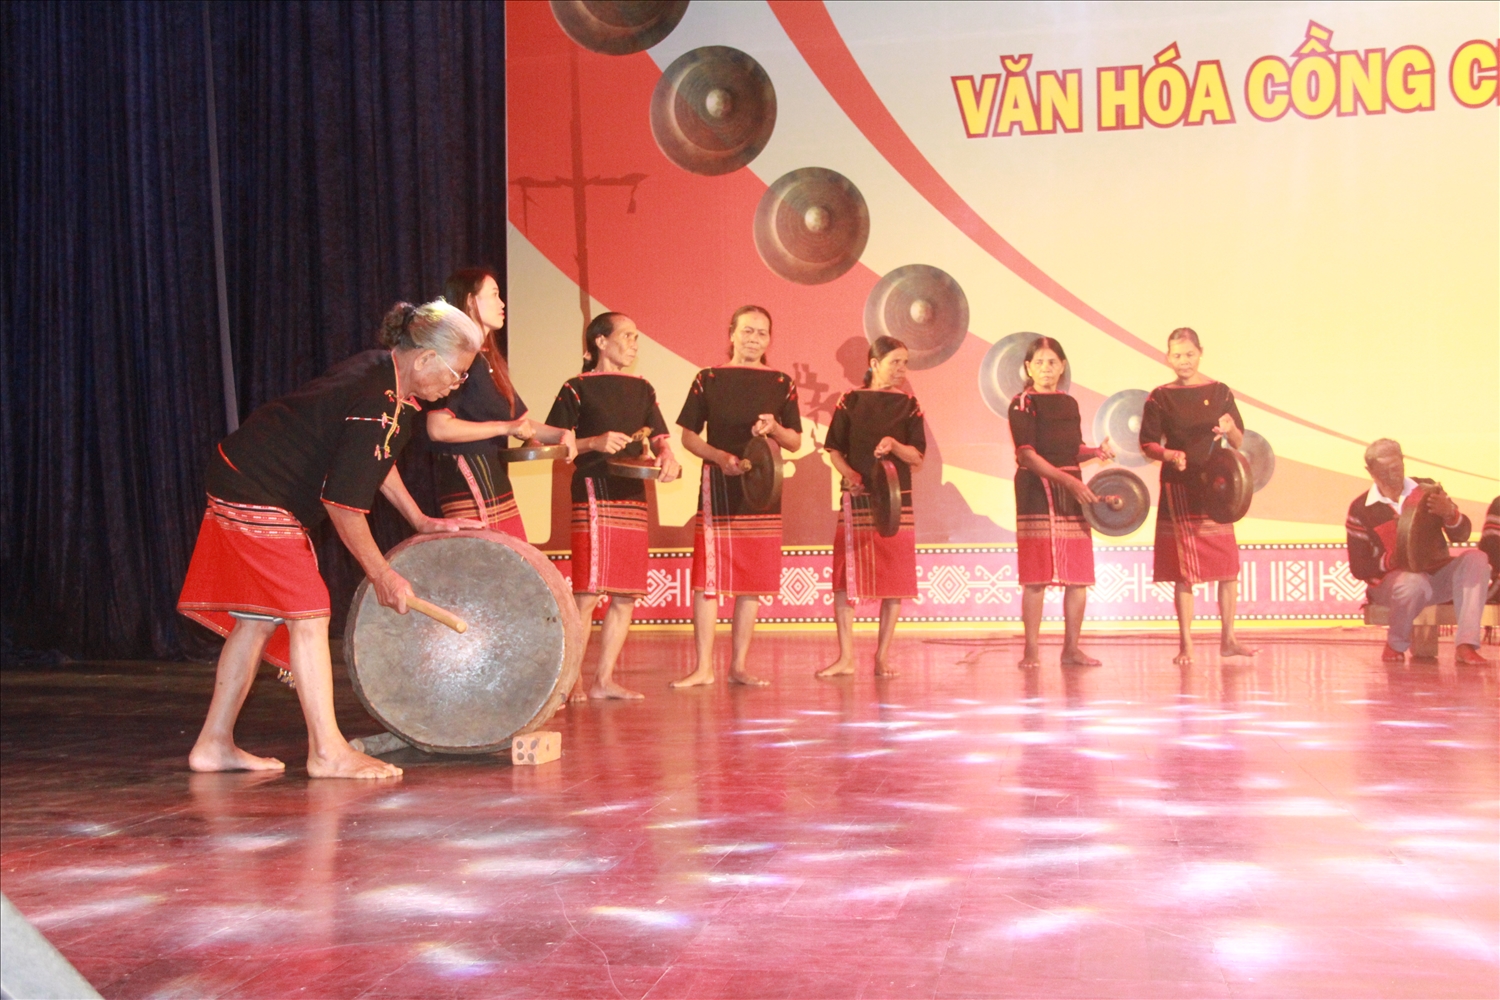 Đội chiêng nữ Ê Đê Bih biểu diễn tại Liên hoan văn hóa cồng chiêng tỉnh Đắk Lắk